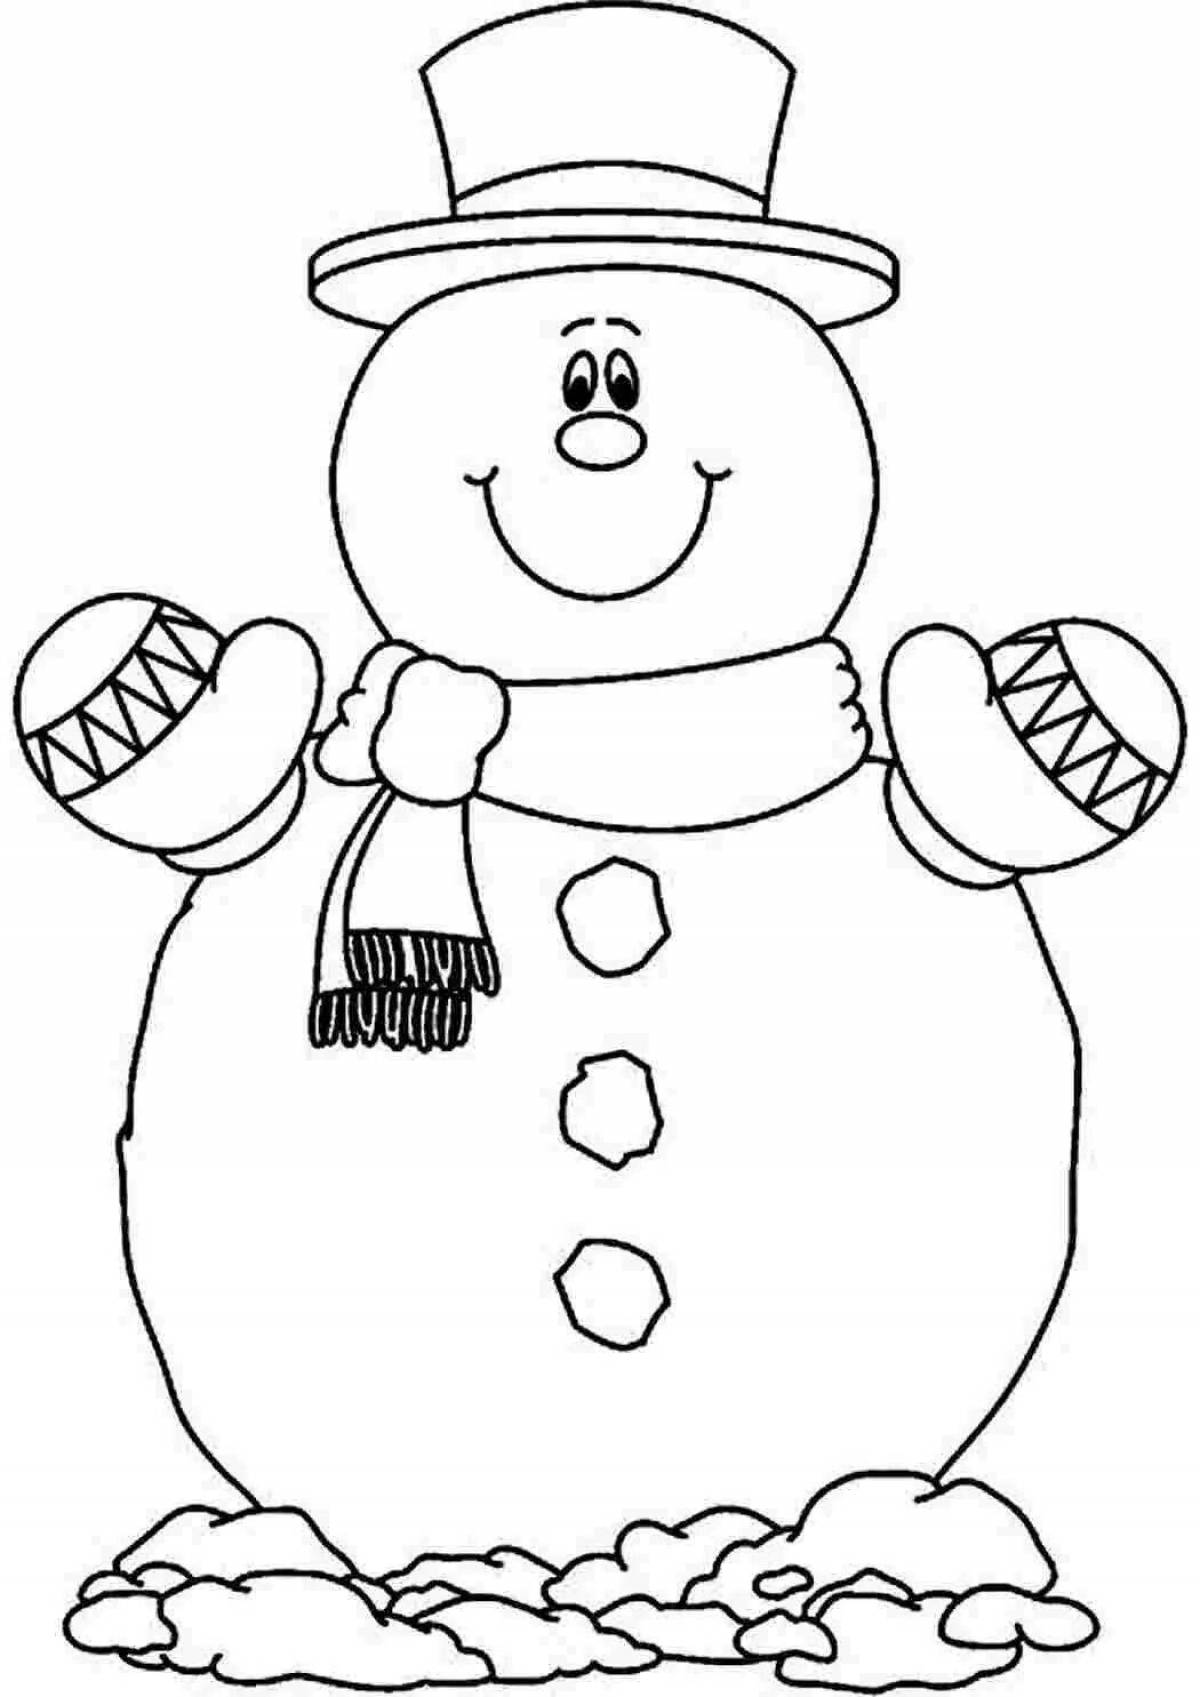 Coloring page festive mega snowman